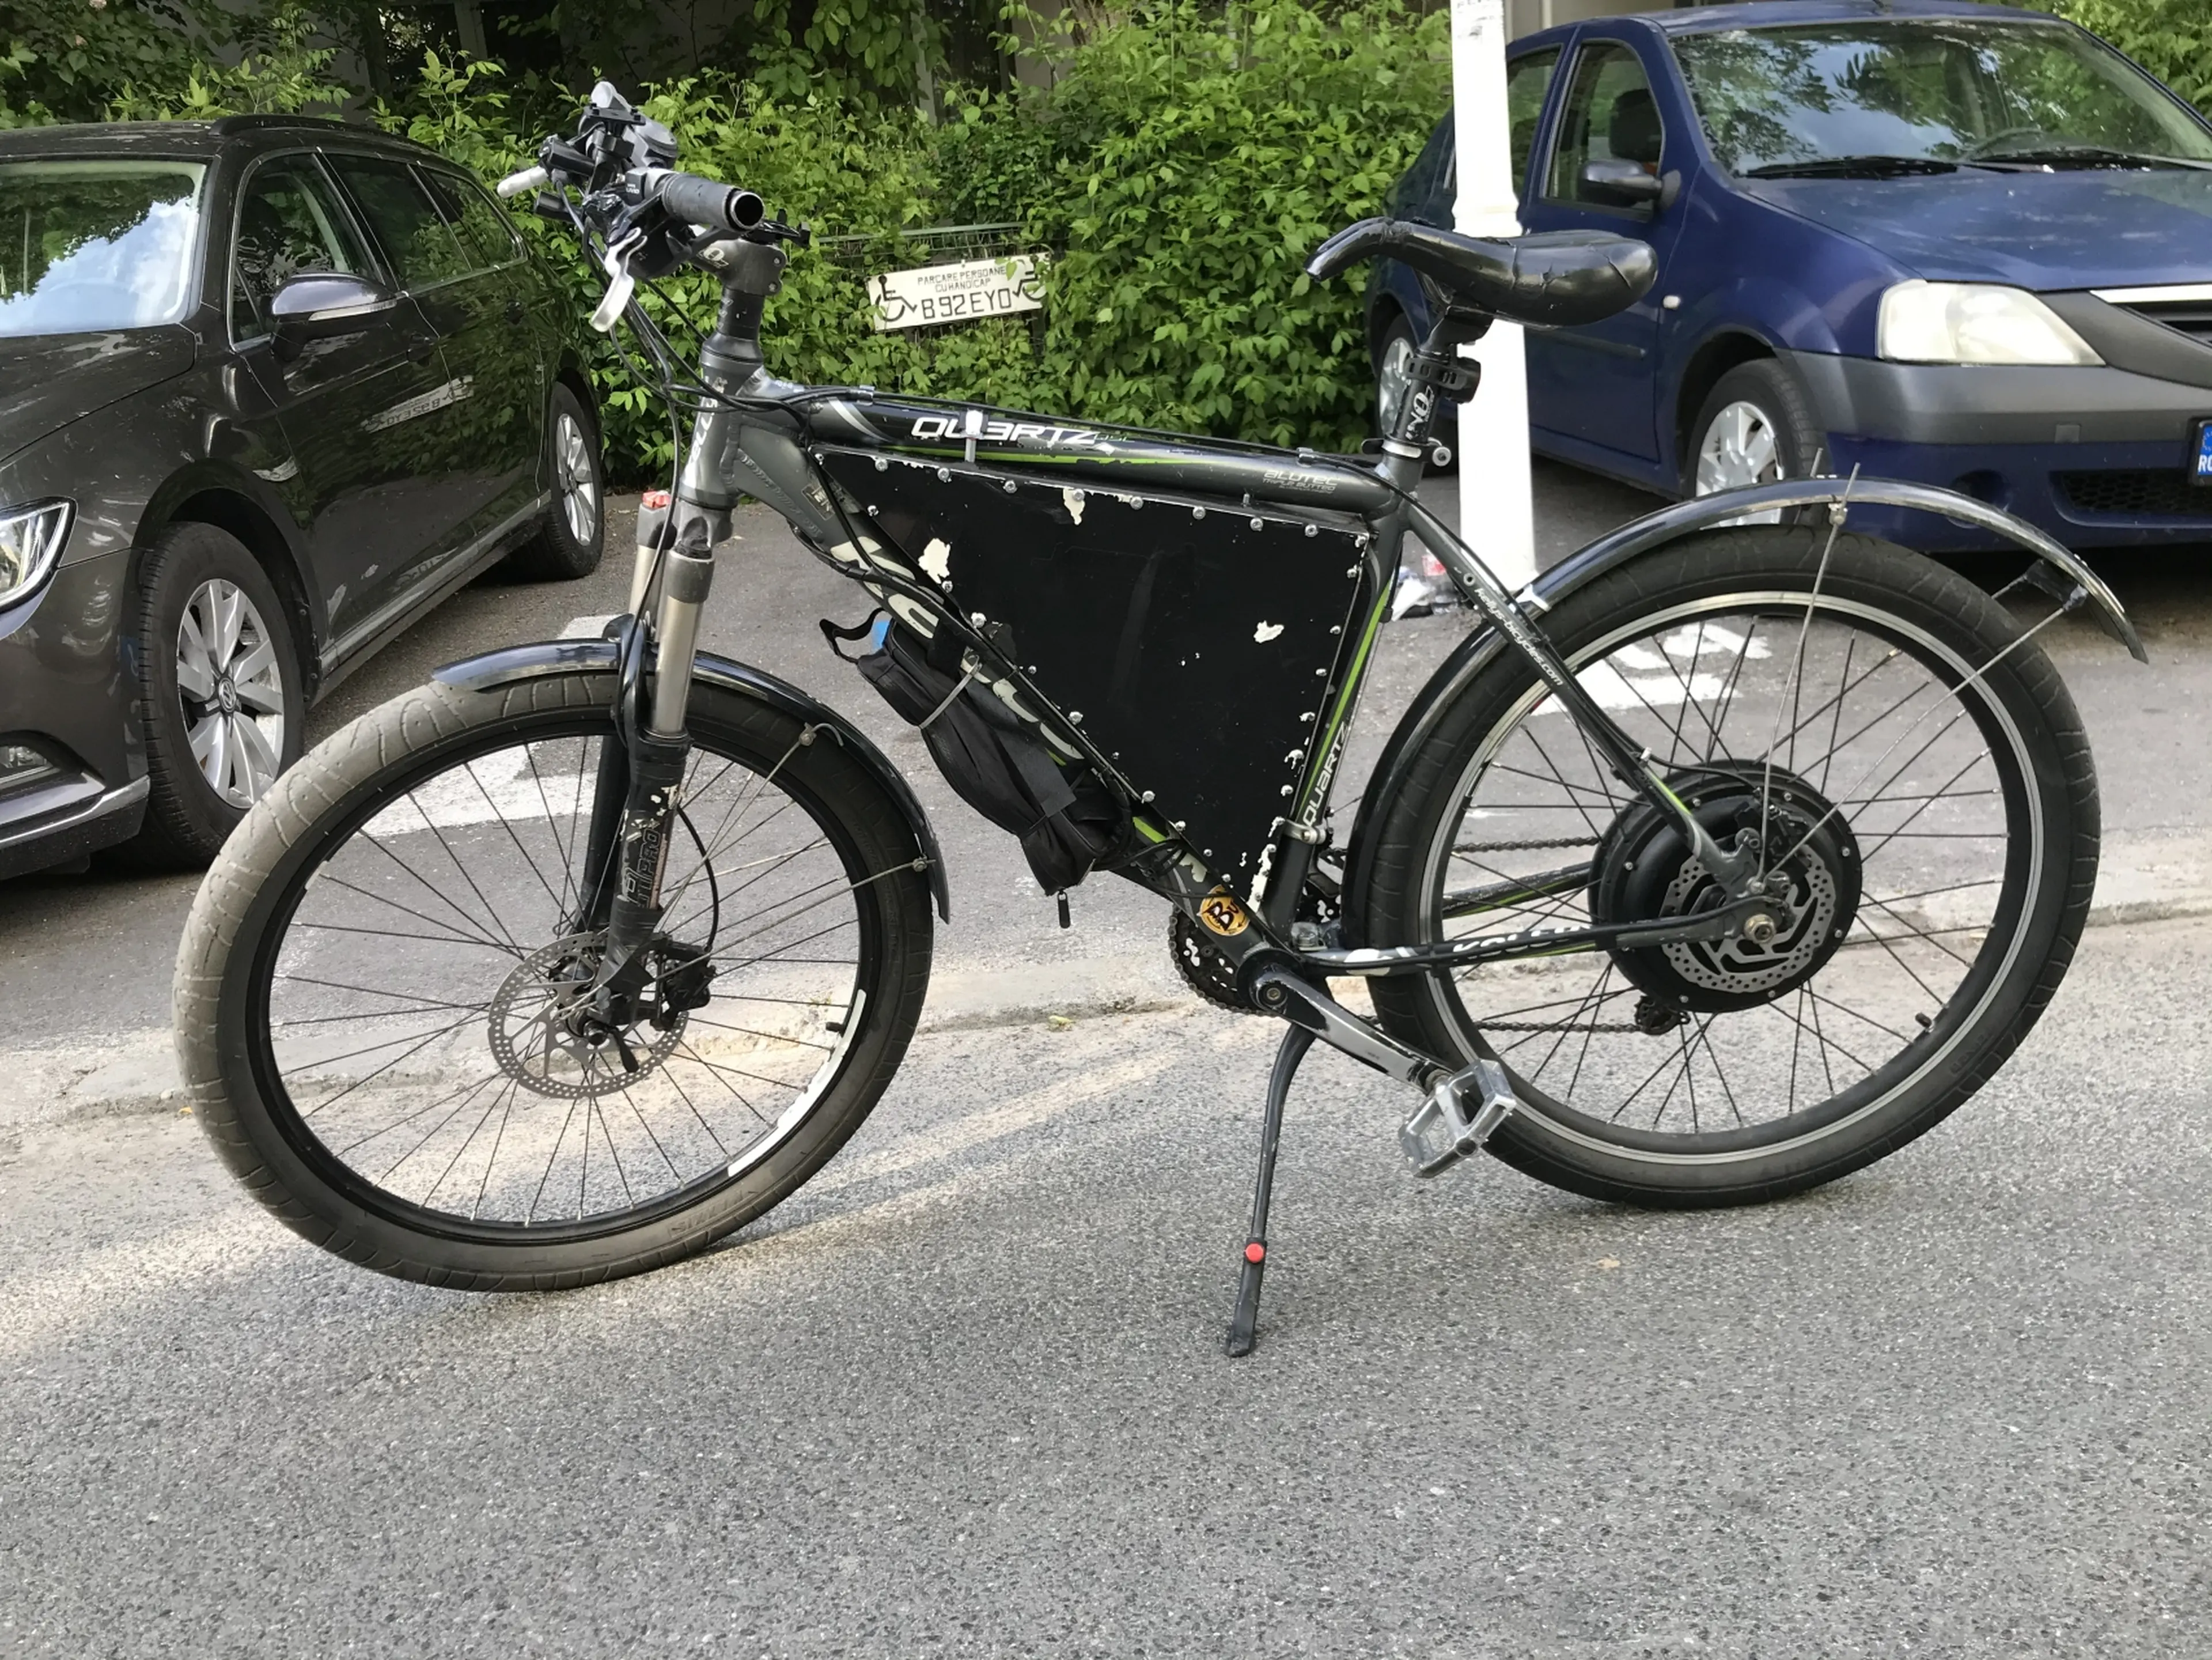 2. Bicicleta electrica 50km/h